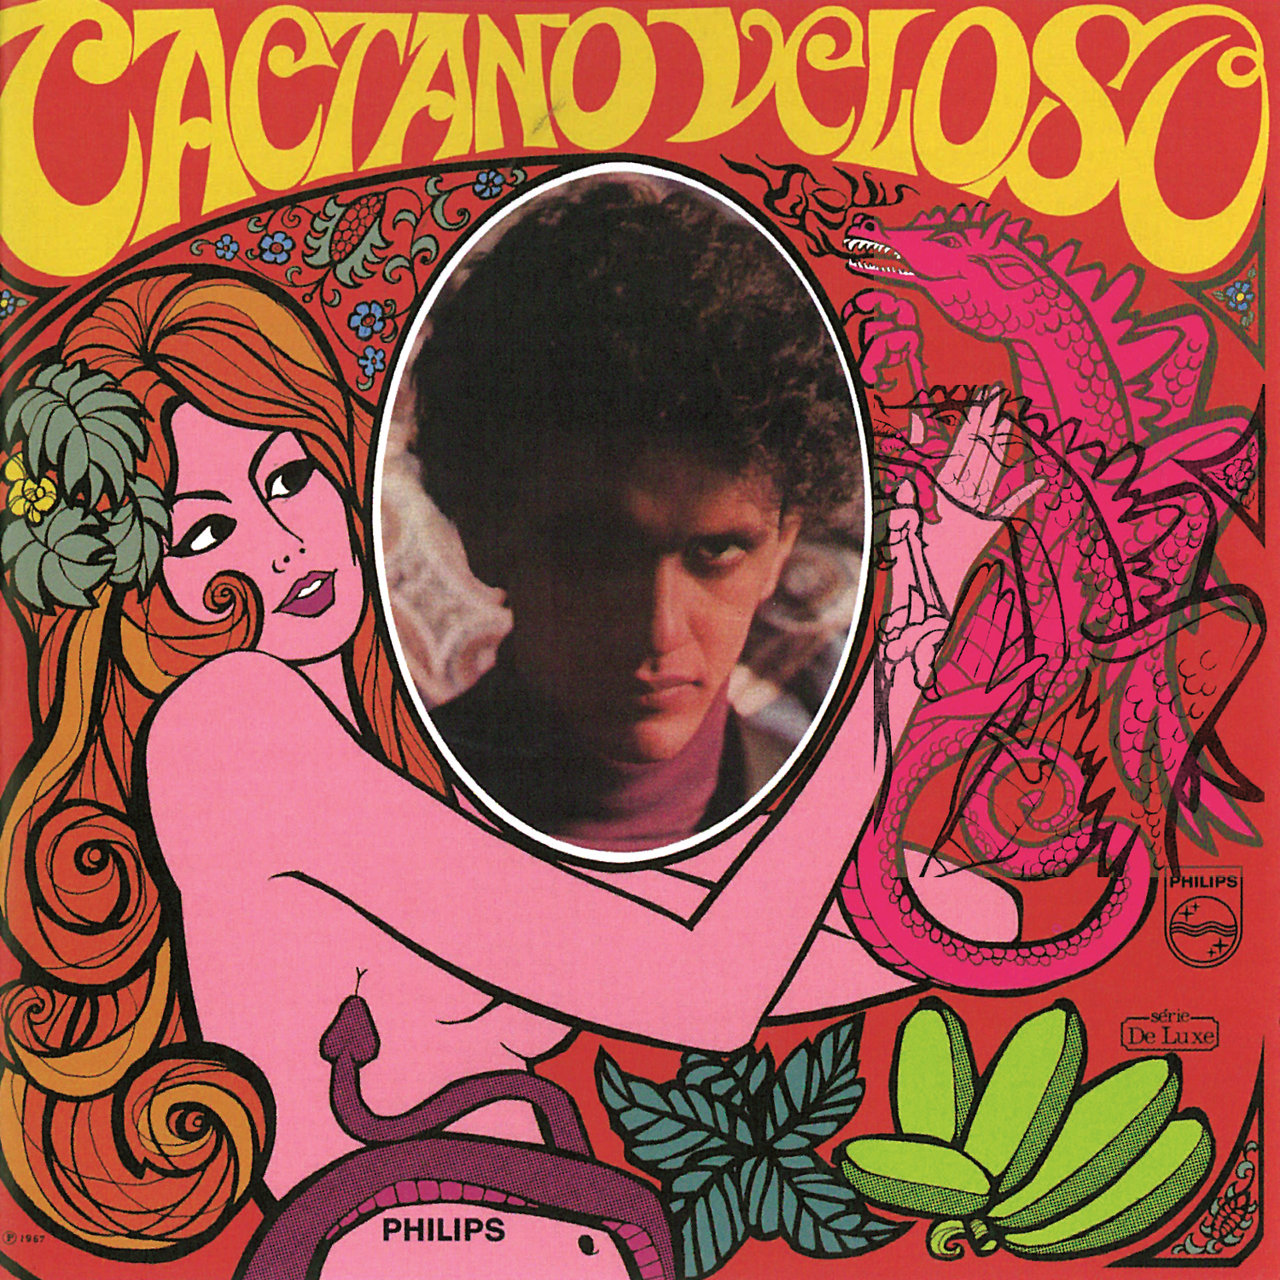 Caetano Veloso, de 1968 (Reprodução)